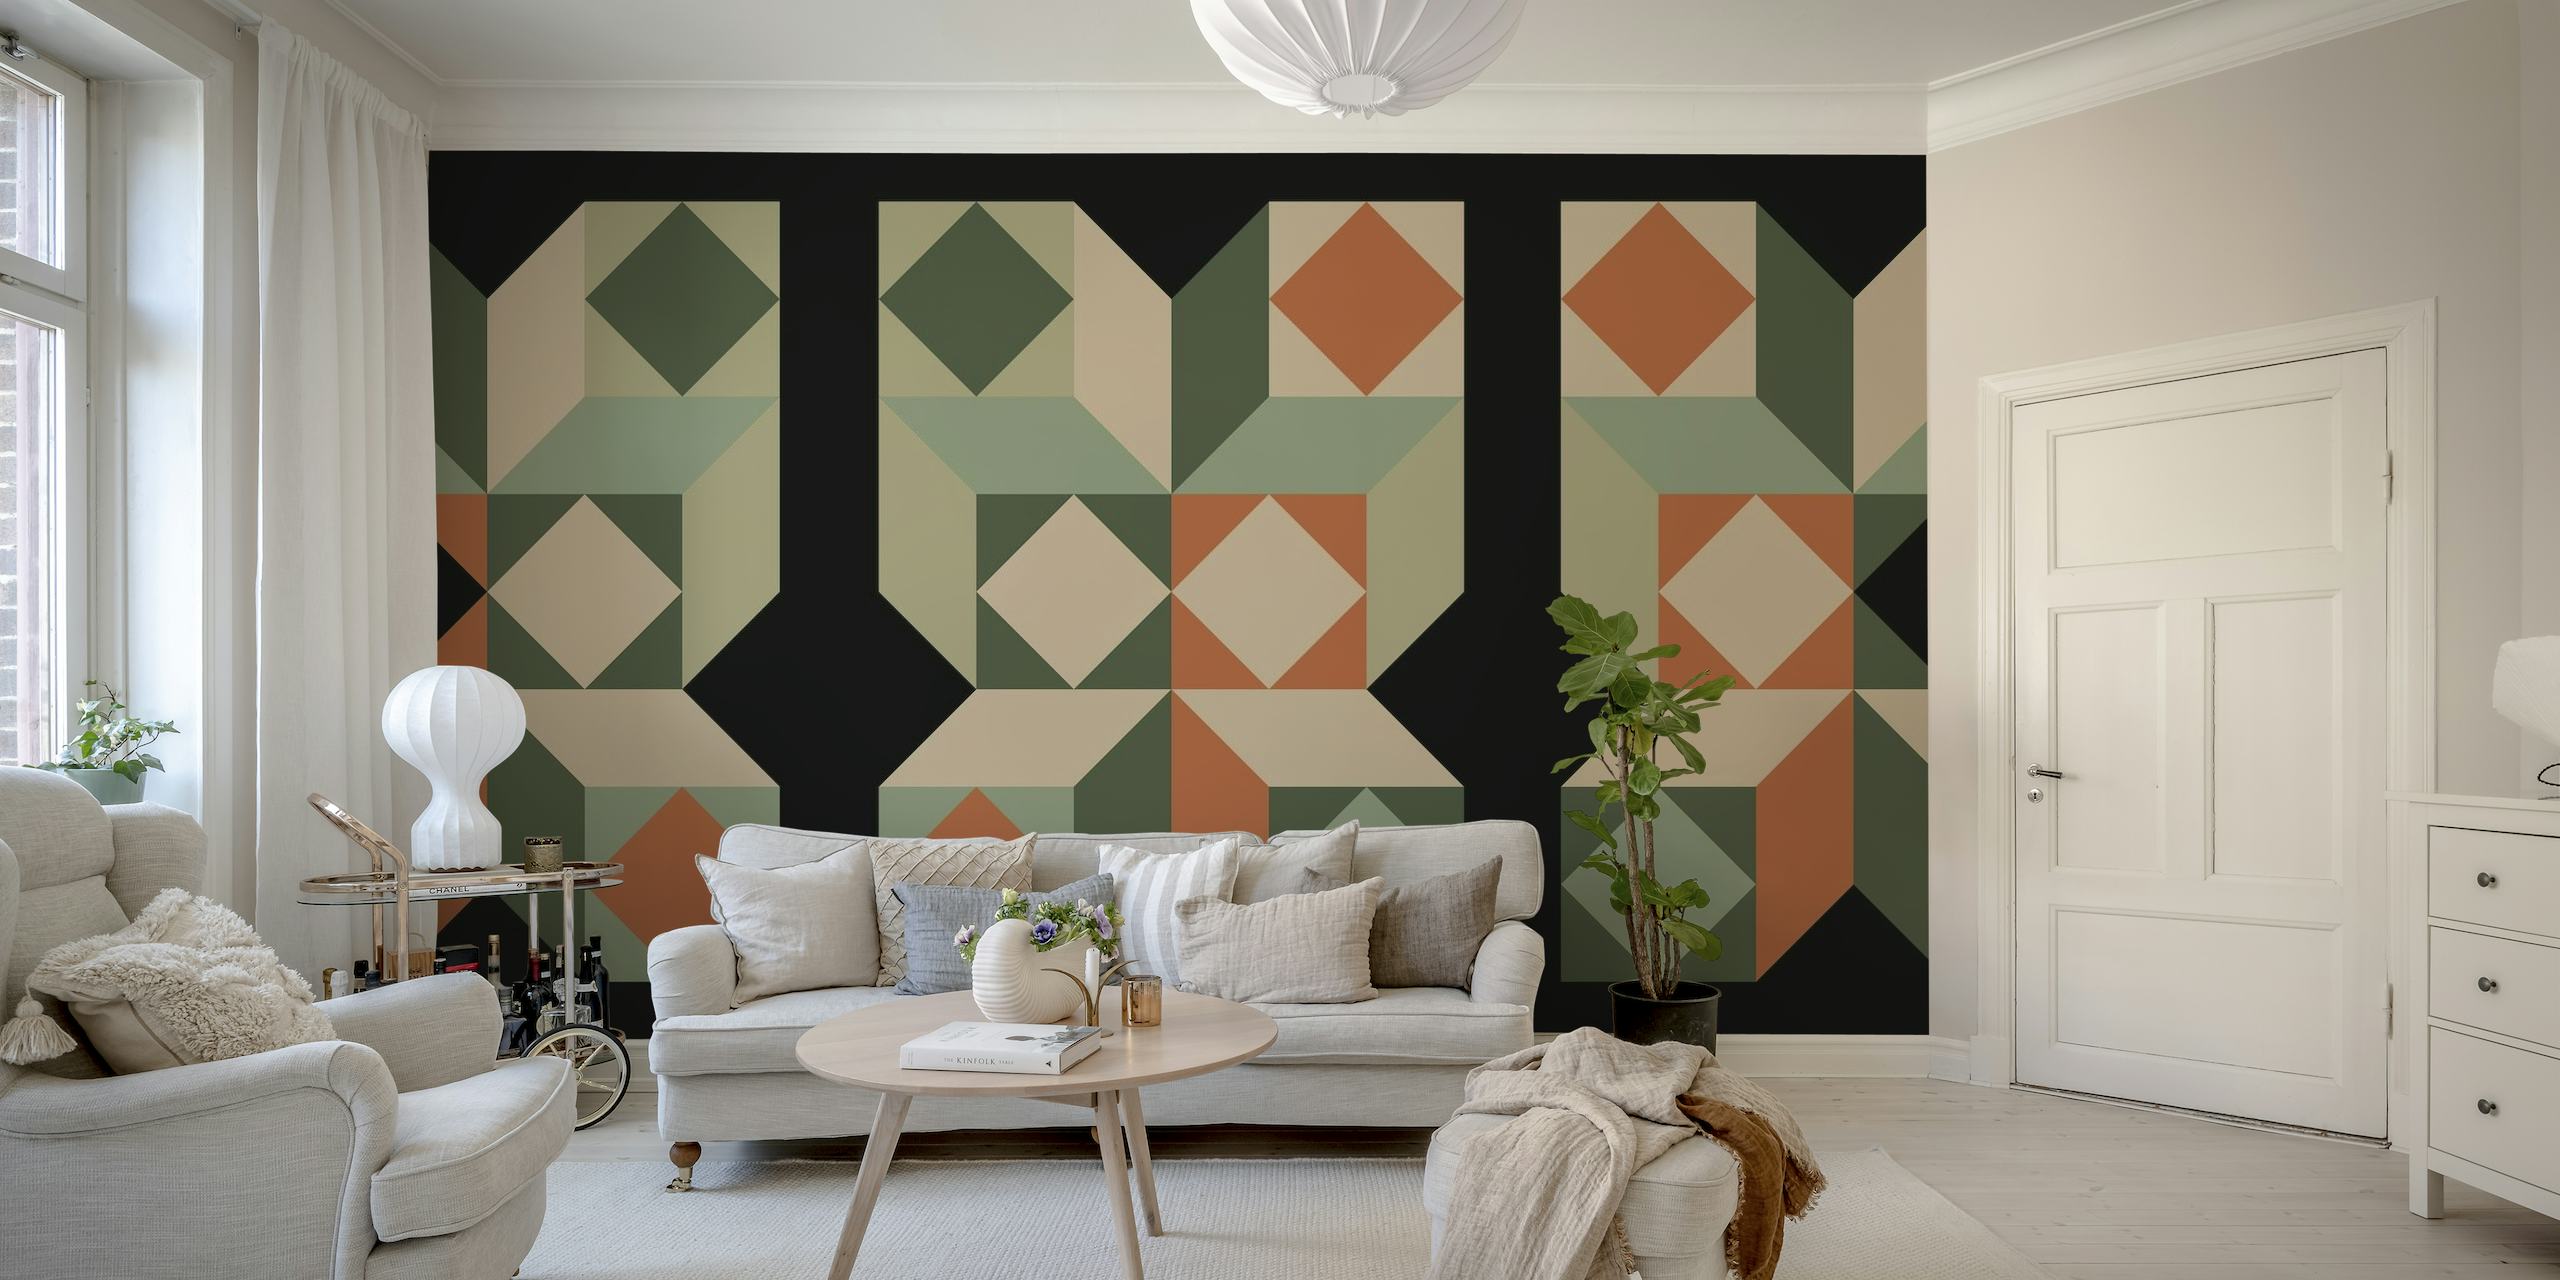 Wandbild im Bauhaus-Stil aus der Mitte des Jahrhunderts mit geometrischen Mustern in Grün-, Orange- und Neutraltönen.